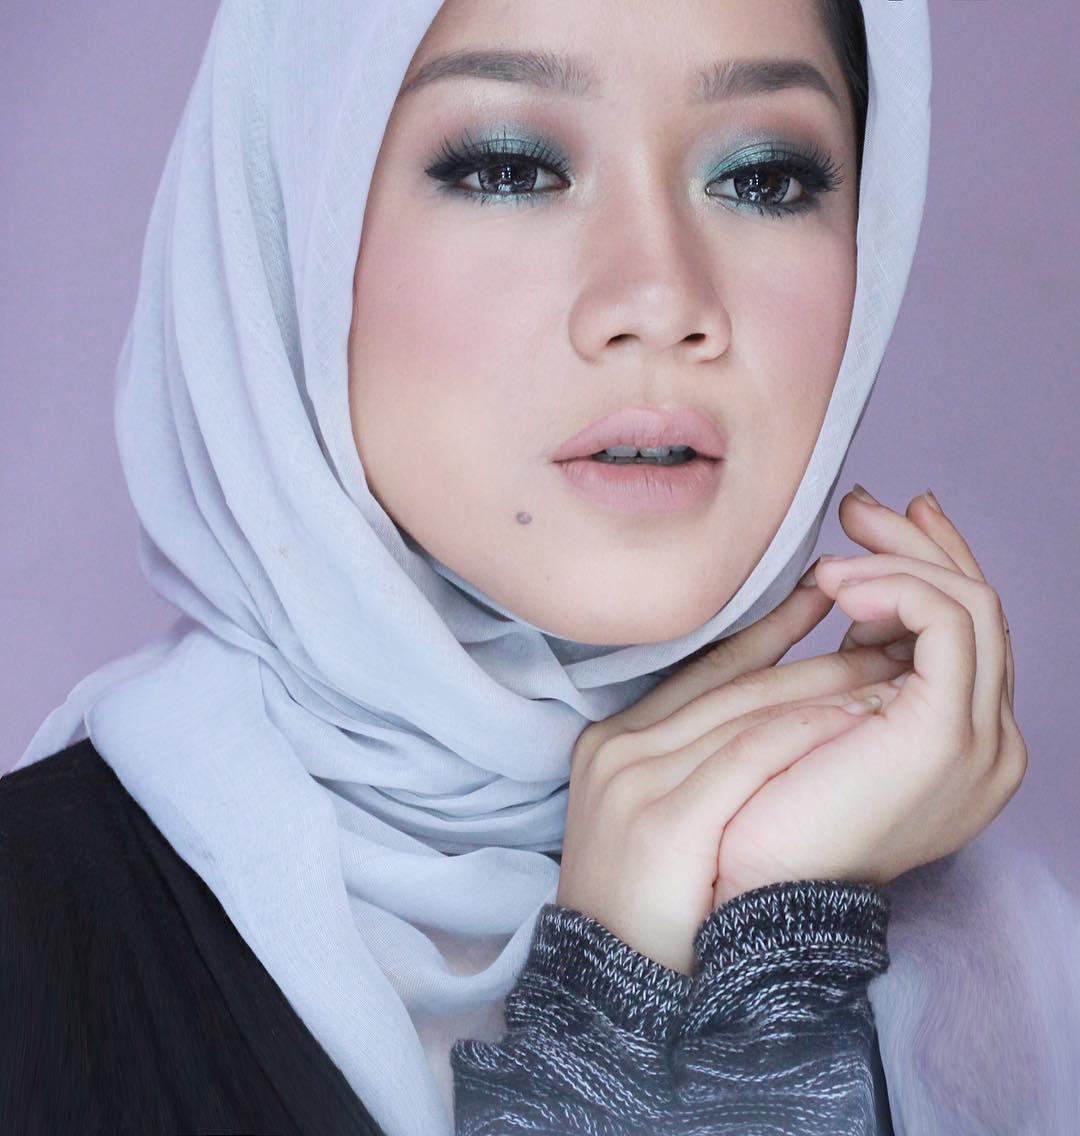 Daftar Beauty Vlogger Indonesia Yang Suka Ngebahas Tutorial Make Up